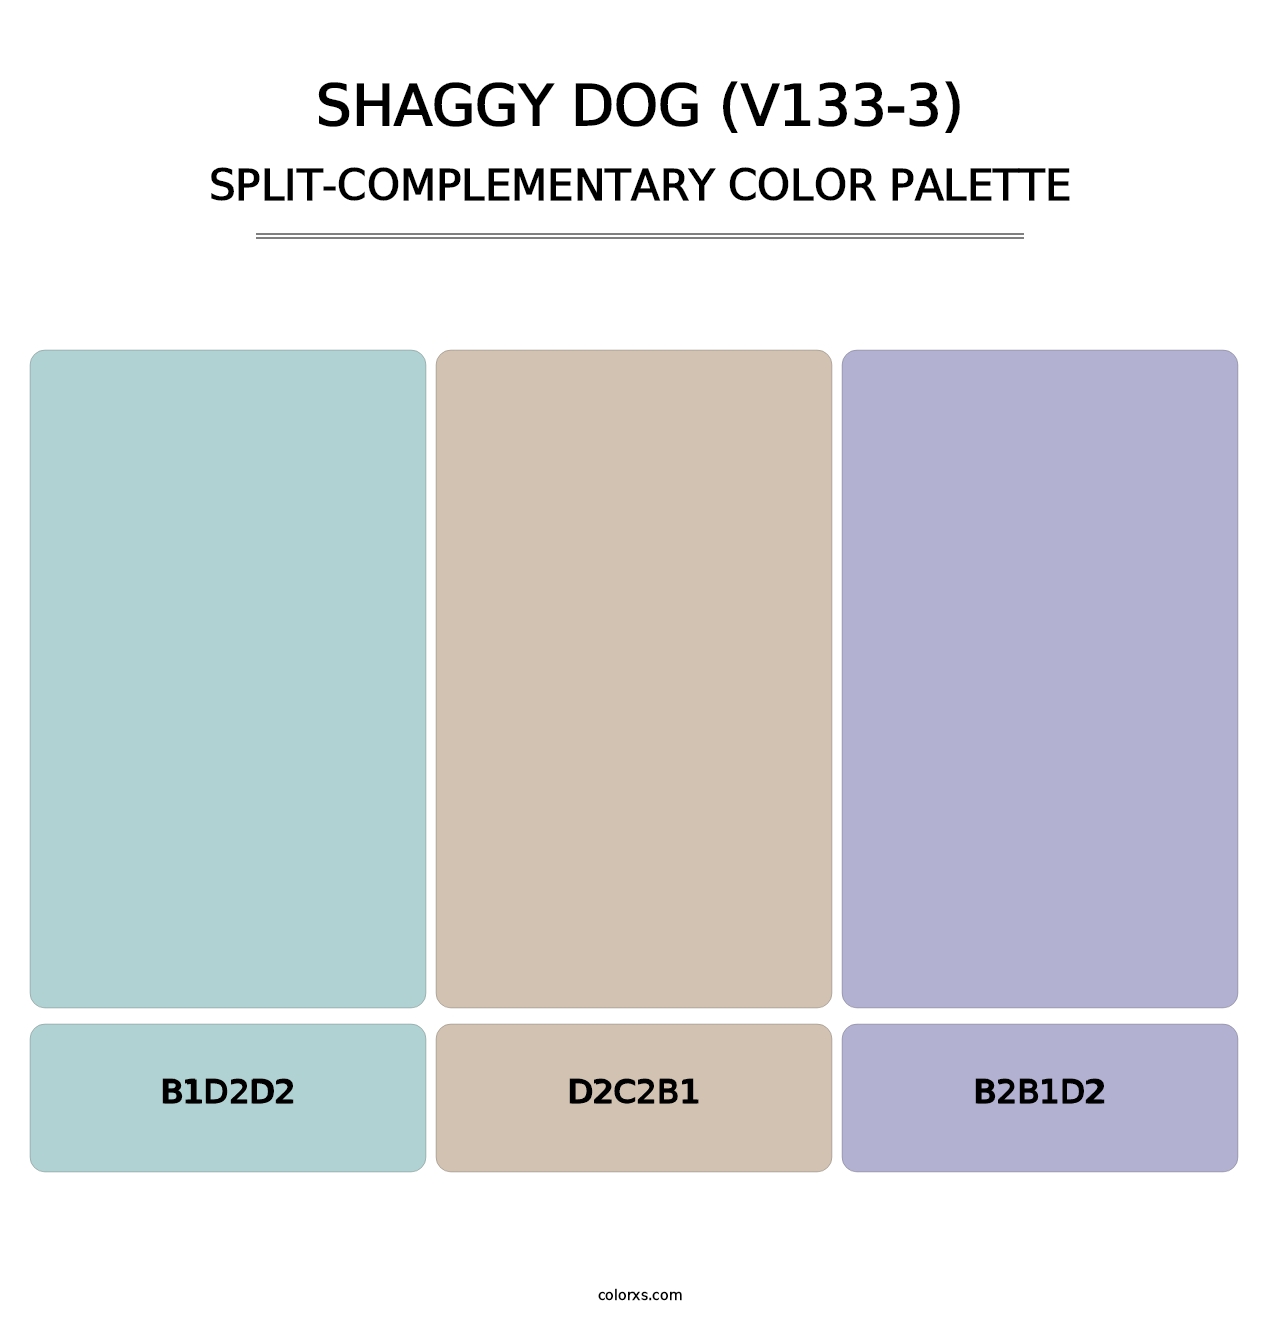 Shaggy Dog (V133-3) - Split-Complementary Color Palette